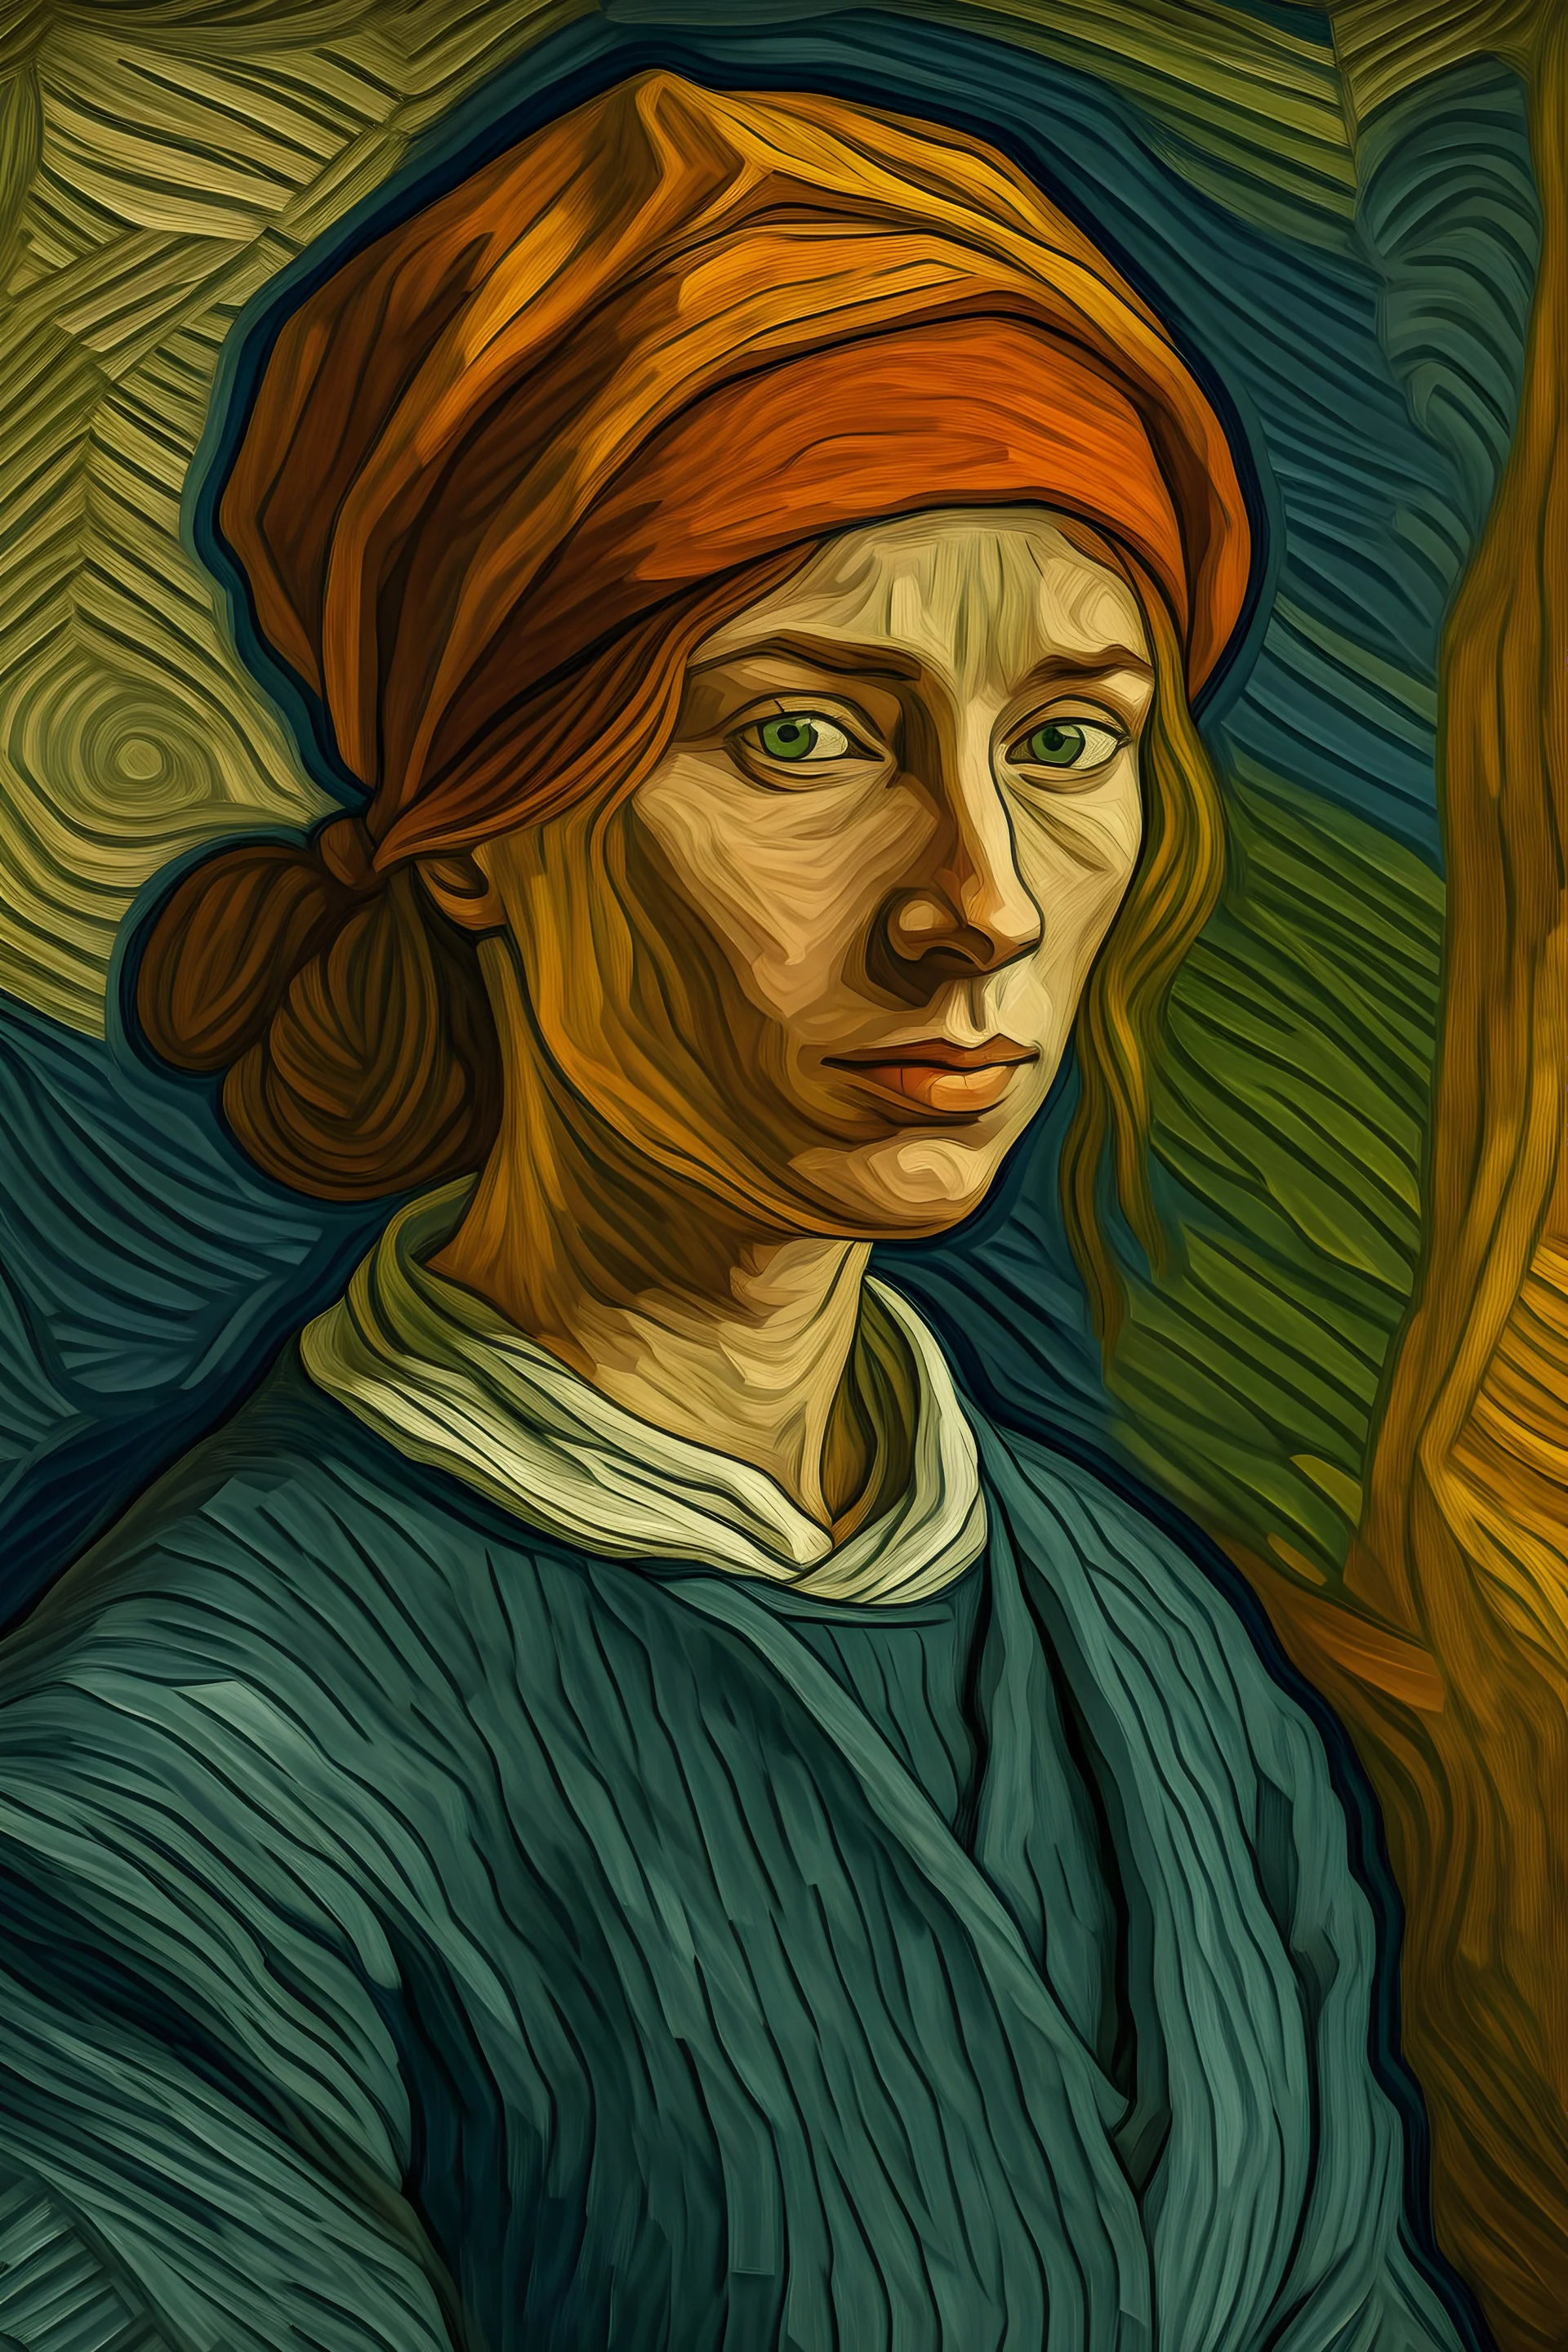 Generar una imagen en el estilo de Vincent van Gogh que represente a la mujer en el mundo laboral.